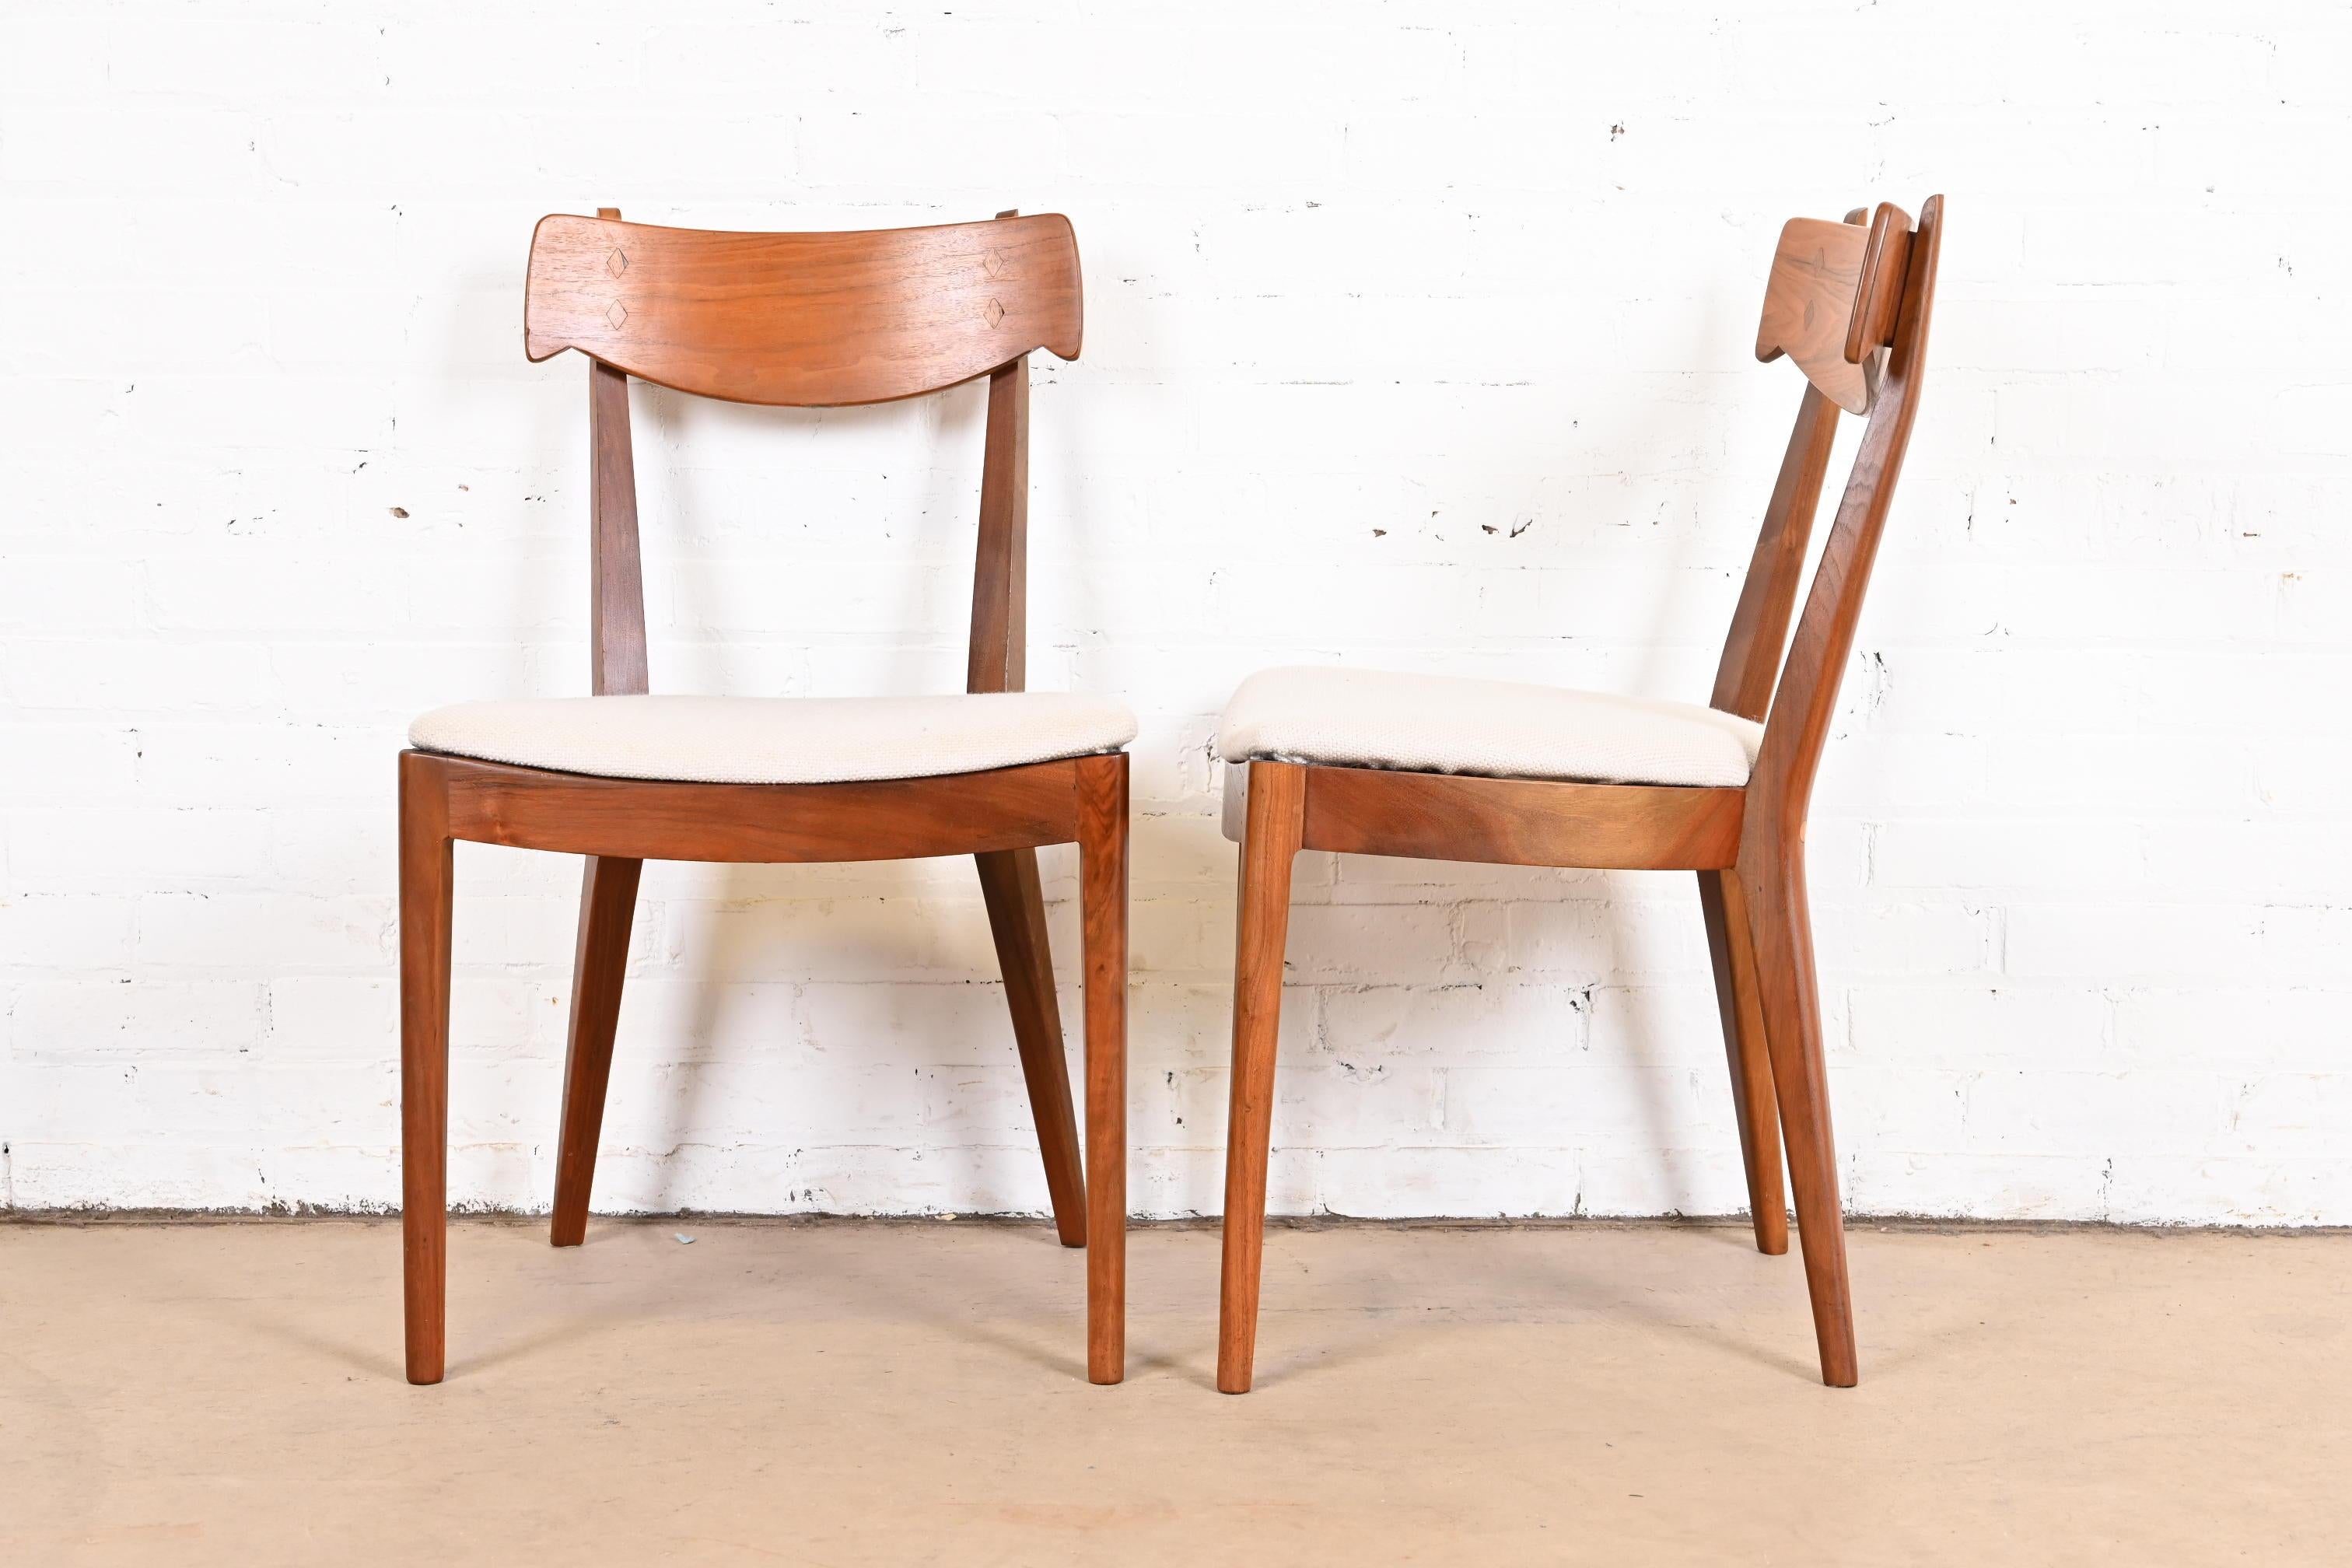 Upholstery Kipp Stewart for Drexel Declaration Sculpted Walnut Dining Chairs, Set of Ten